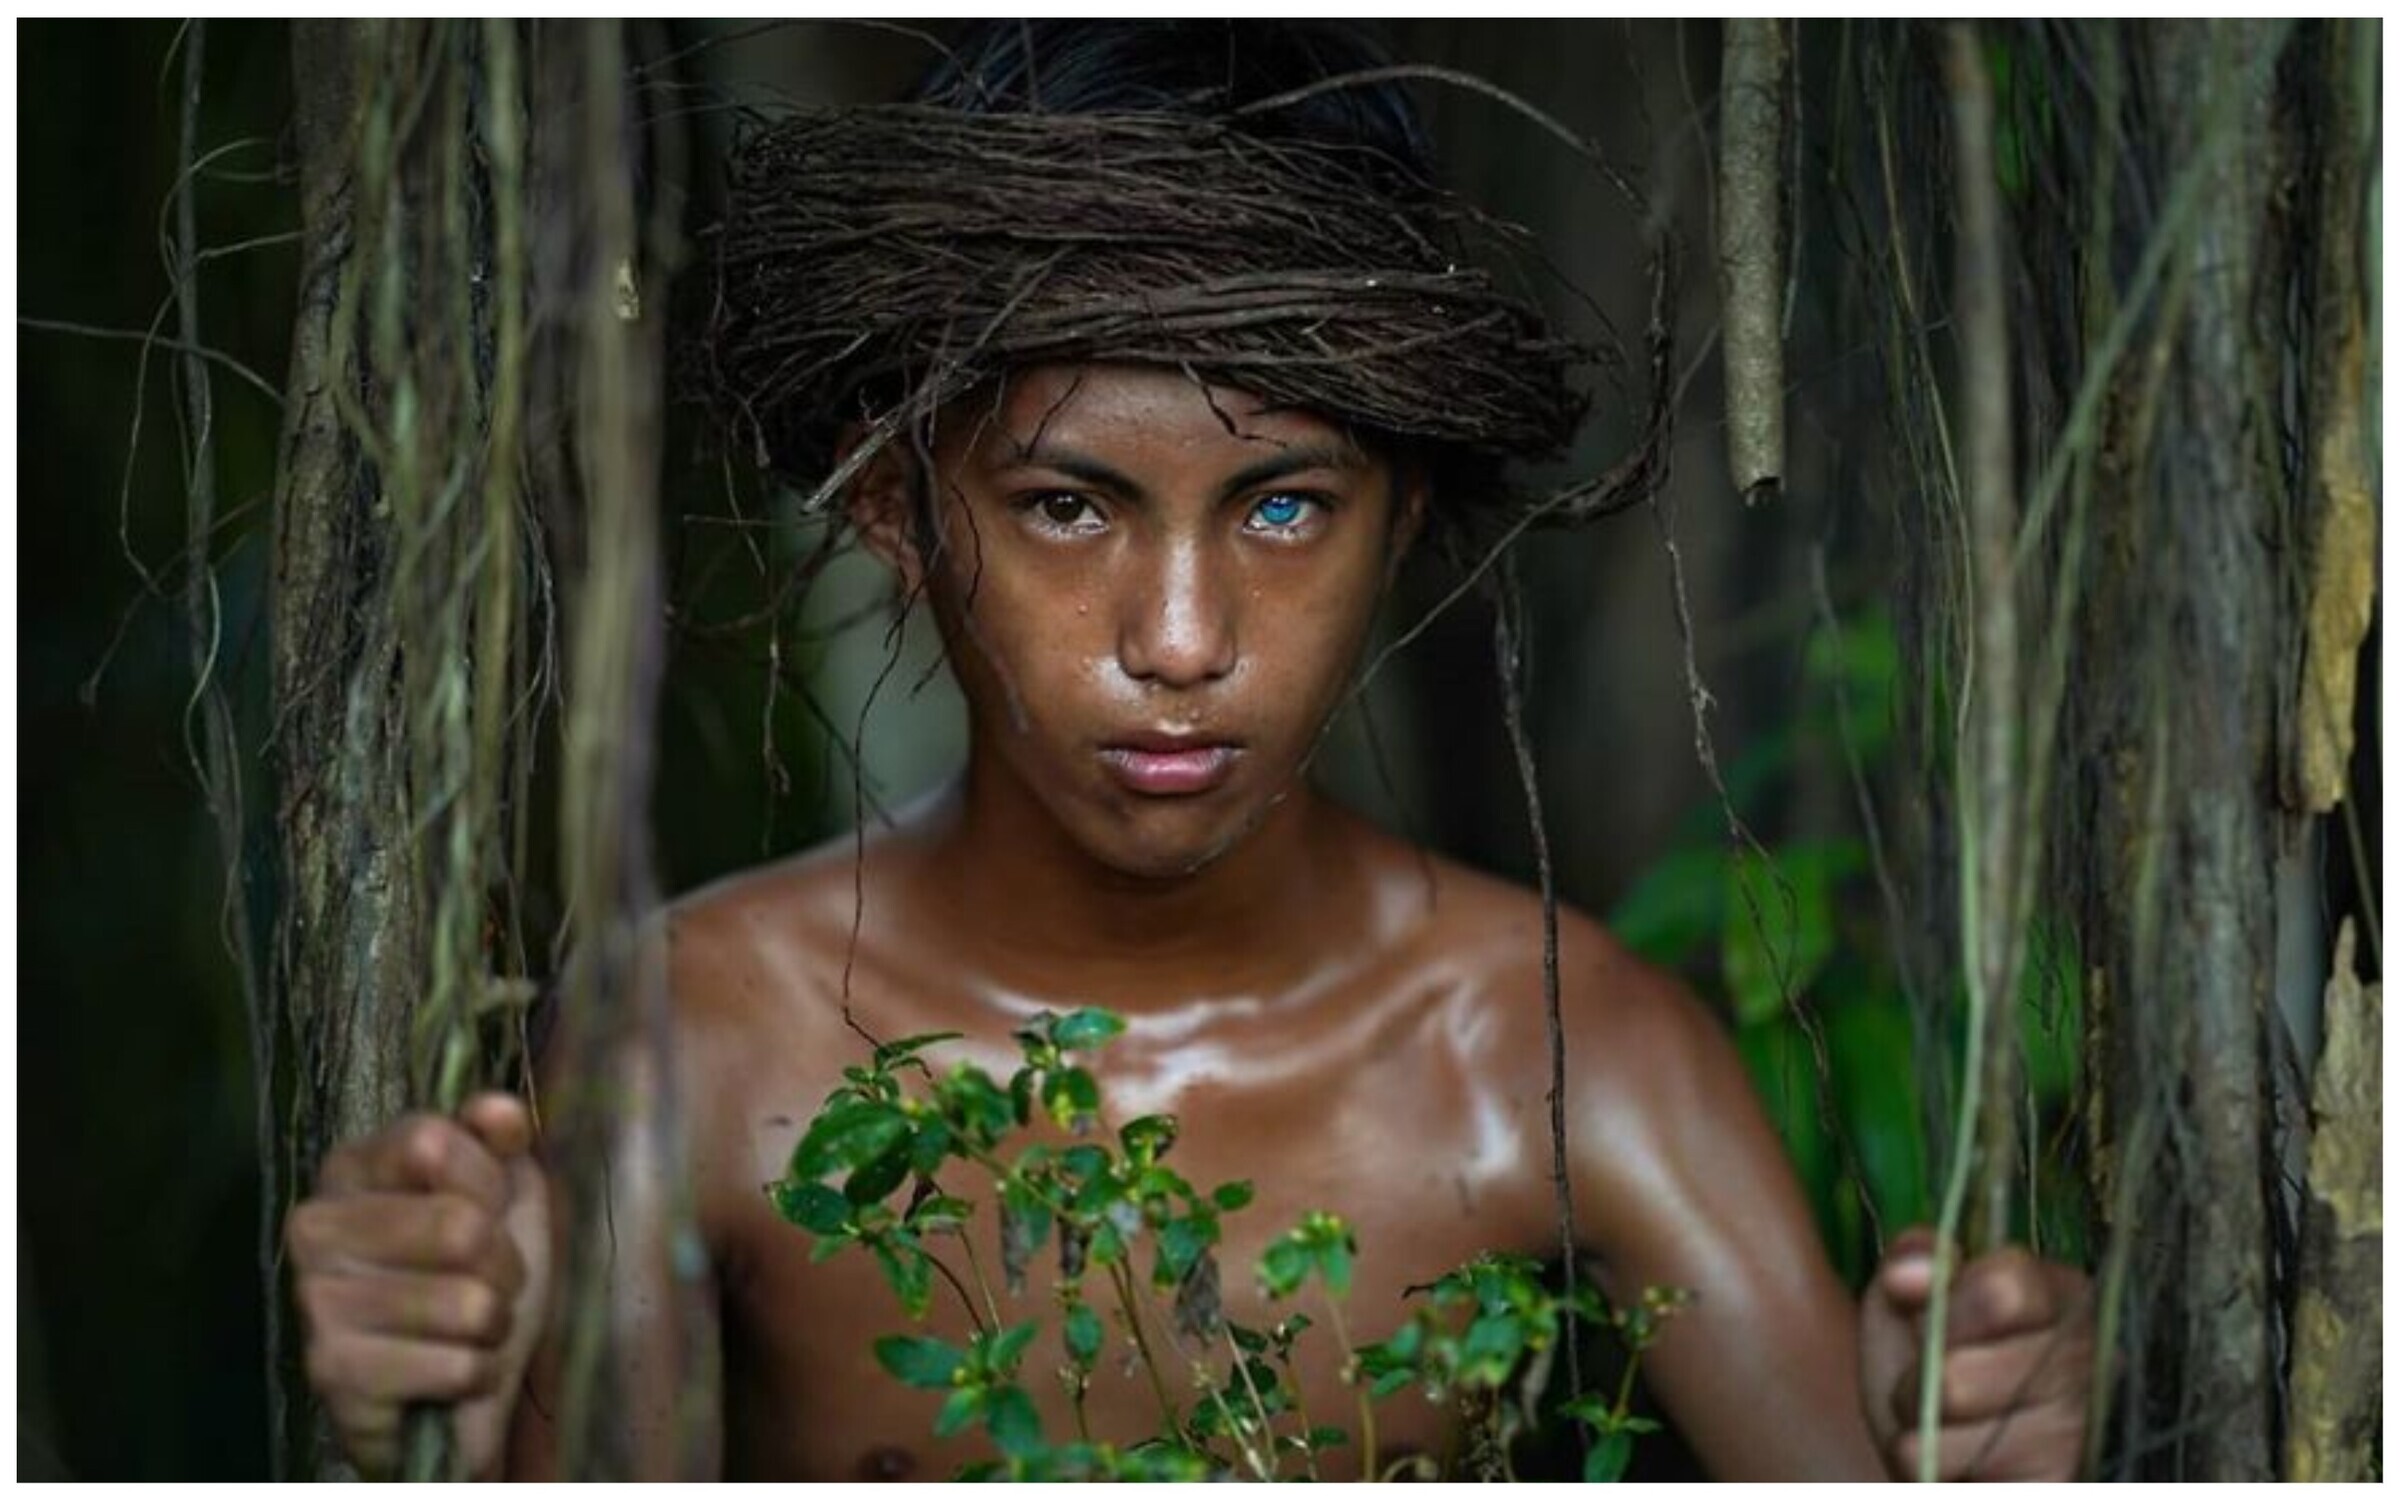 Дики люди видео. Индонезия племя бутунг. Бразилия джунгли неконтактные племена. Племя бутон на острове бутунг Индонезии.